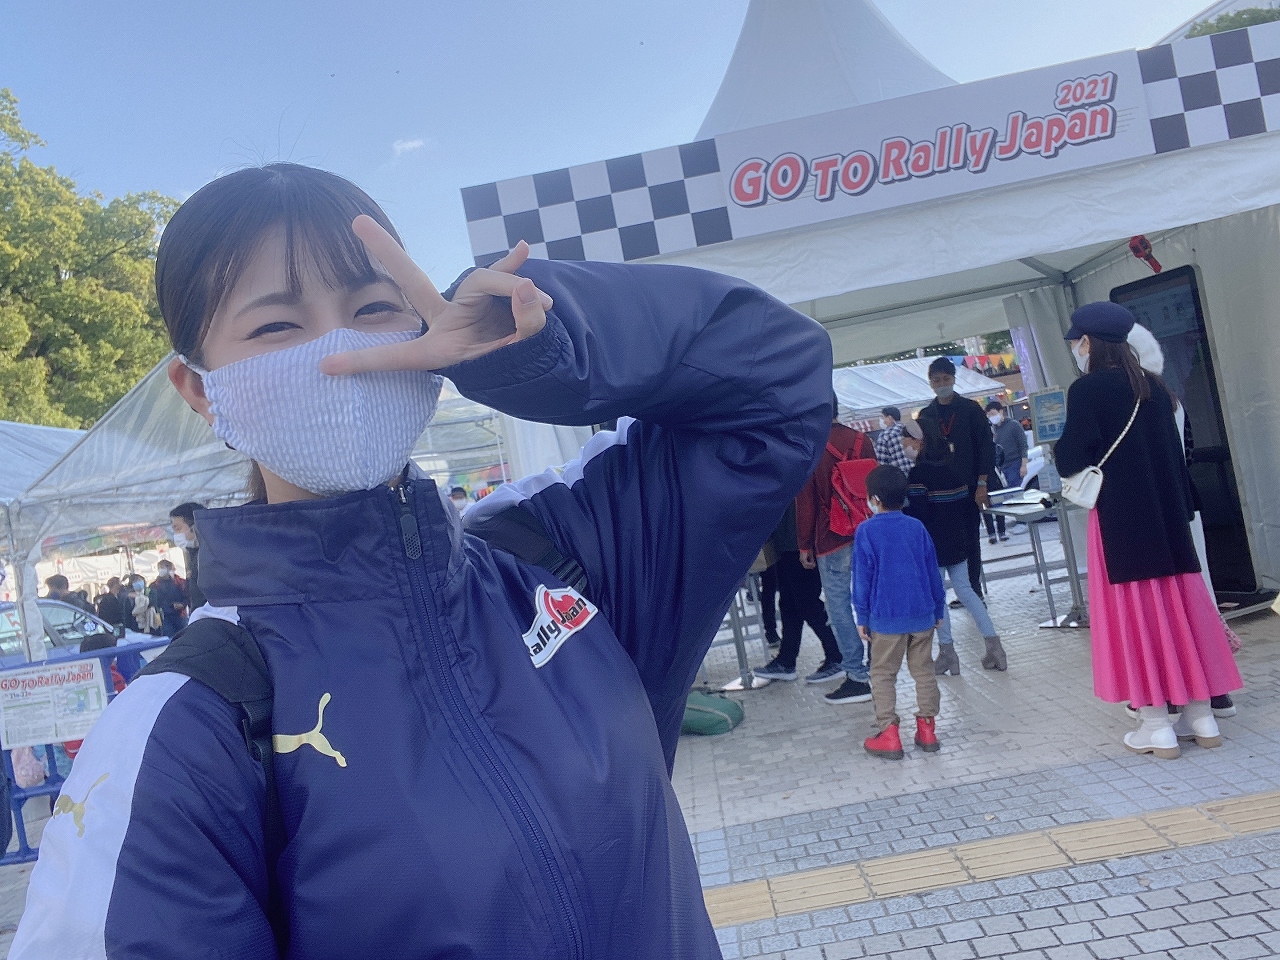 「梅本まどかがSKE48の本拠地・栄で行われた「GO TO RallyJapan2021」イベントに参加してきました☆【うめまど通信vol.26】」の16枚目の画像